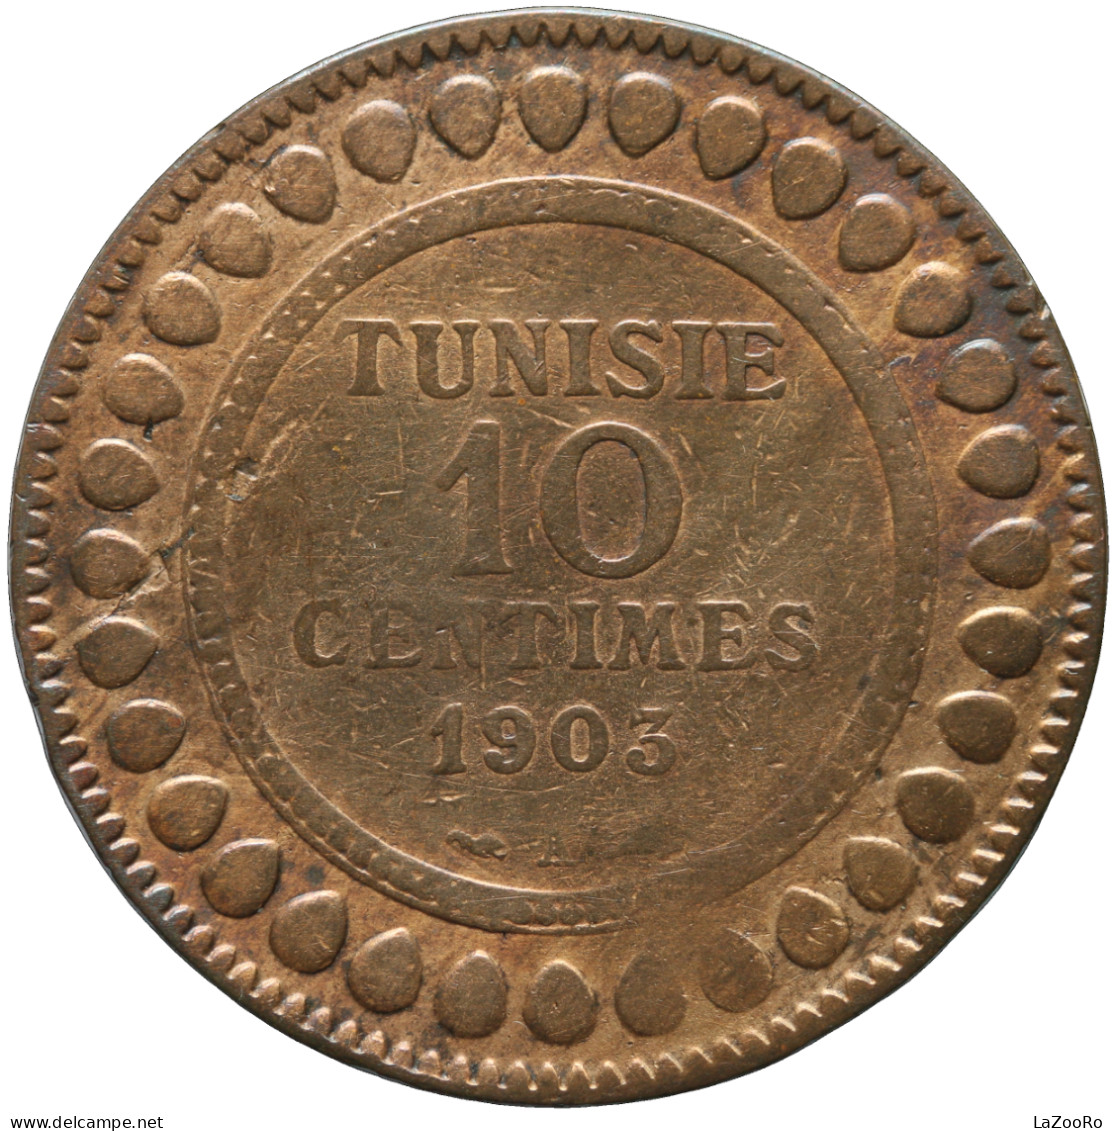 LaZooRo: Tunisia 10 Centimes 1903 F / VF Scarce - Tunisie